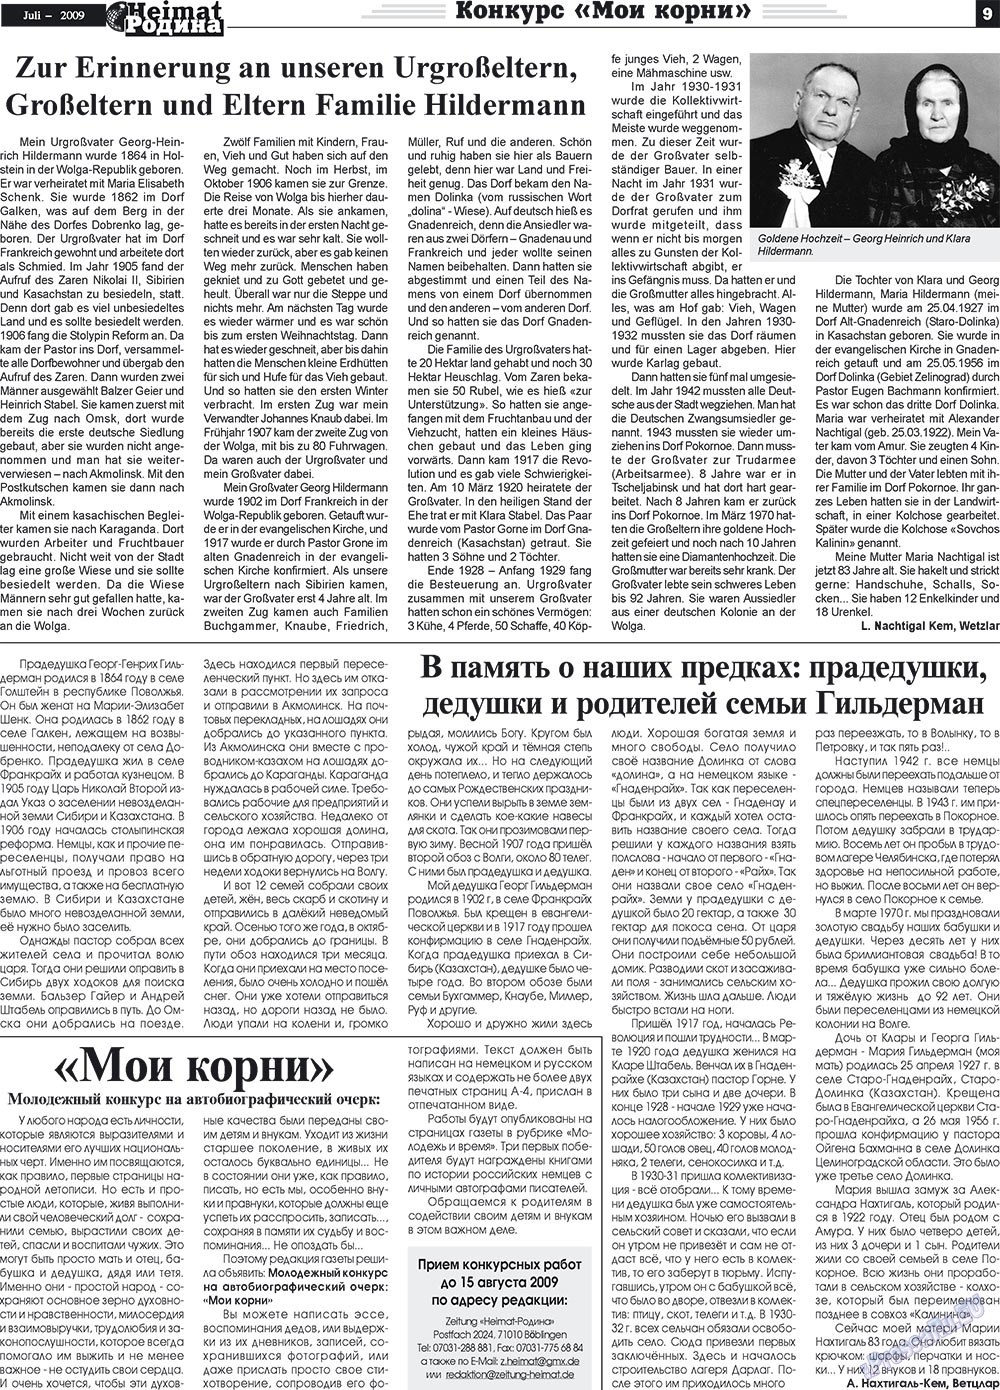 Heimat-Родина (газета). 2009 год, номер 7, стр. 9